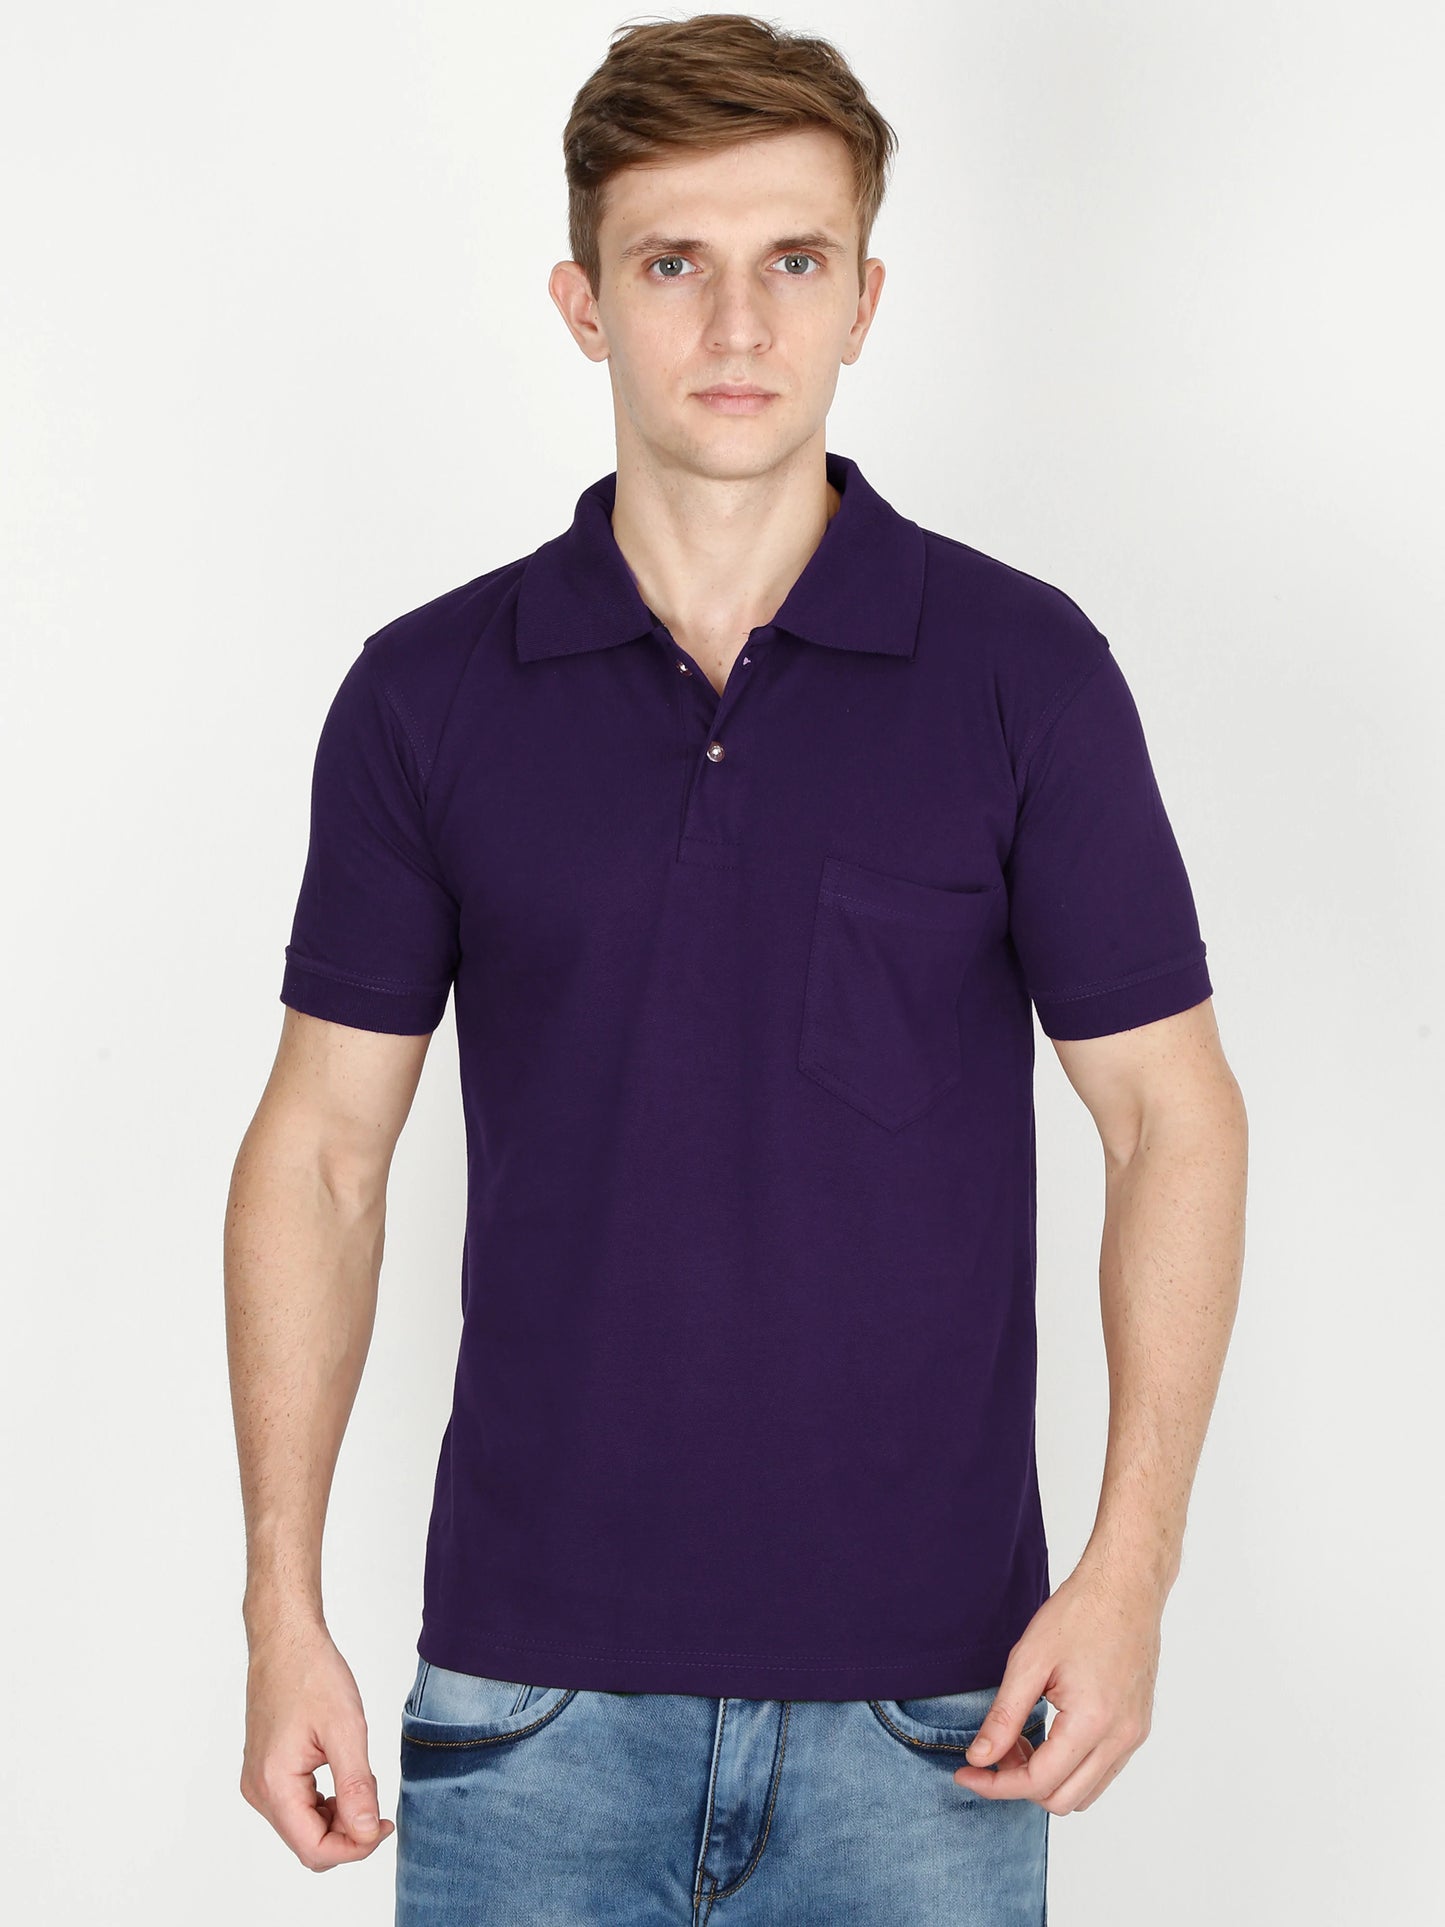 Men's Cotton Plain Polo Neck Half Sleeve Purple Color T-Shirt